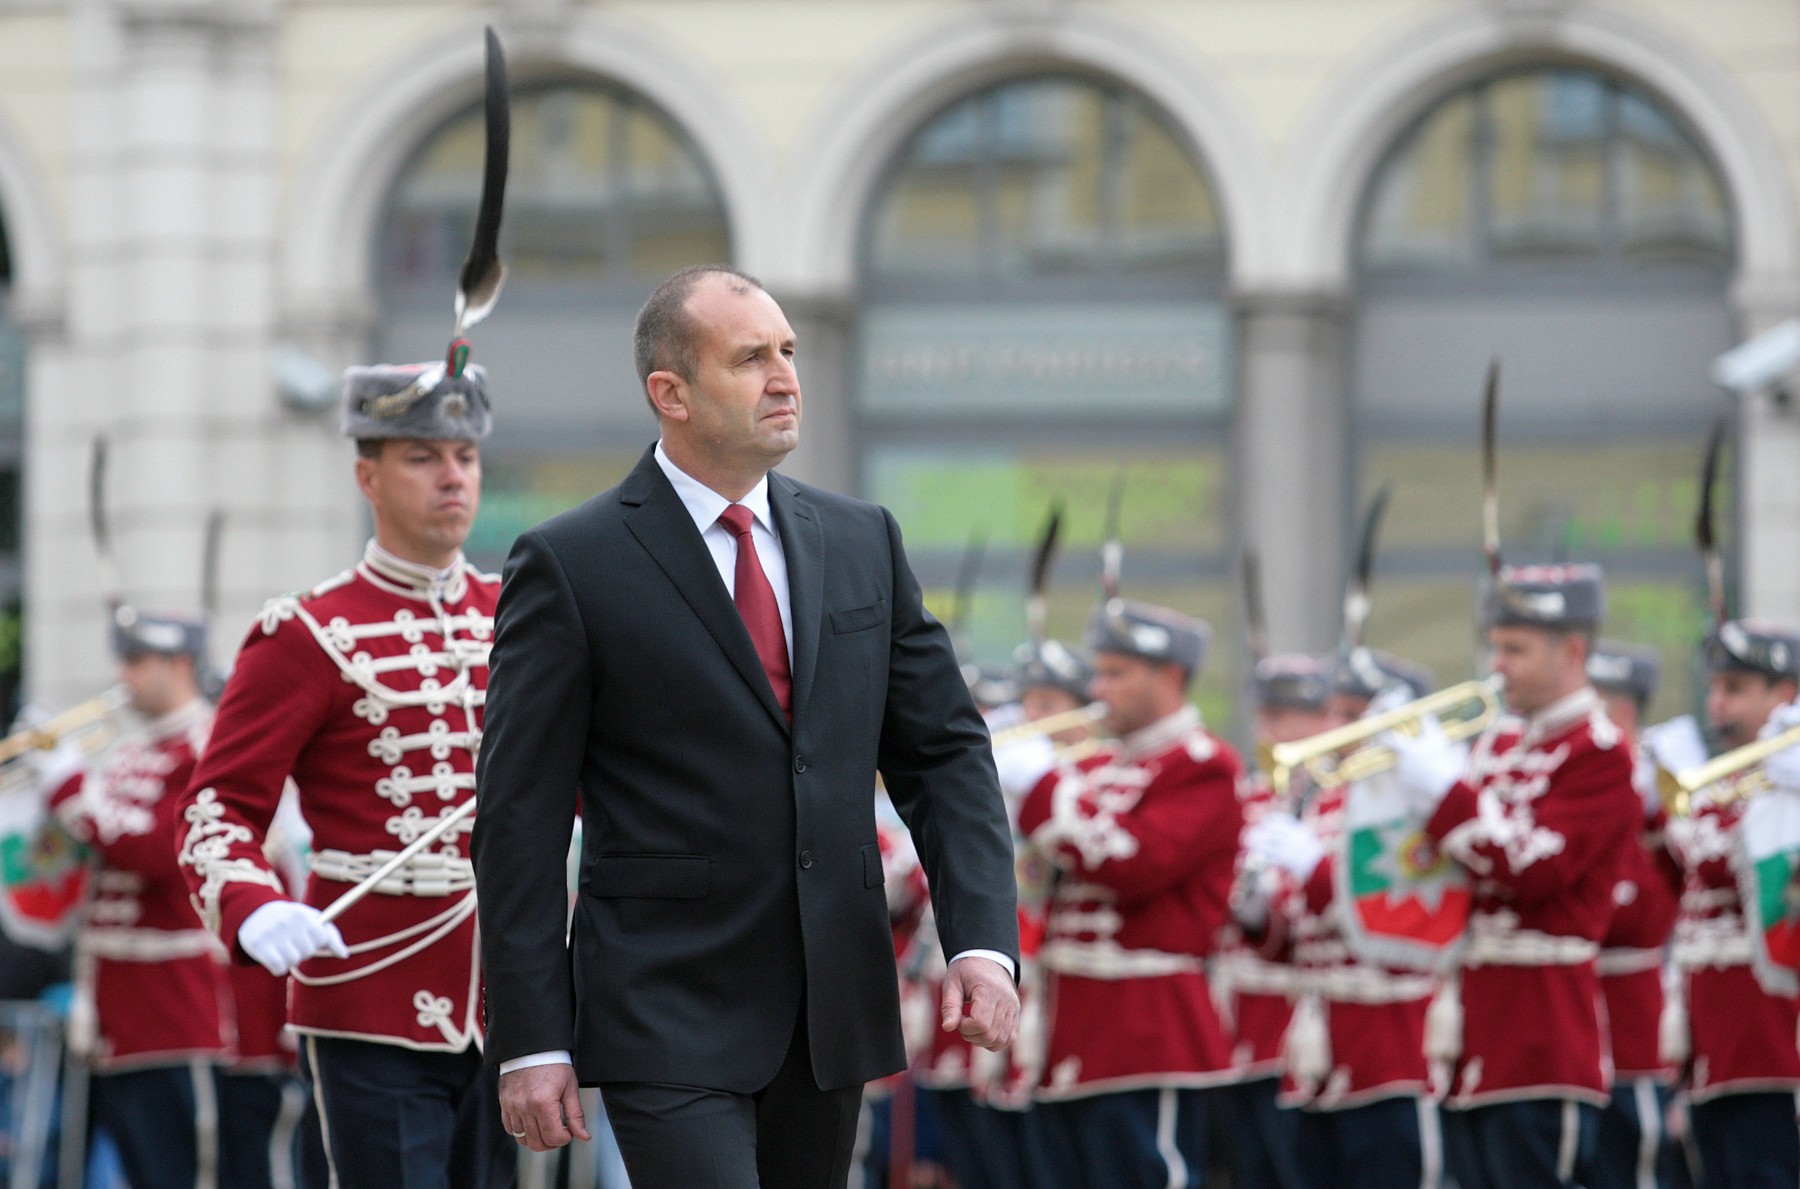 Радев: Модернизацията на Българската армия е все по-наложителна и без алтернатива